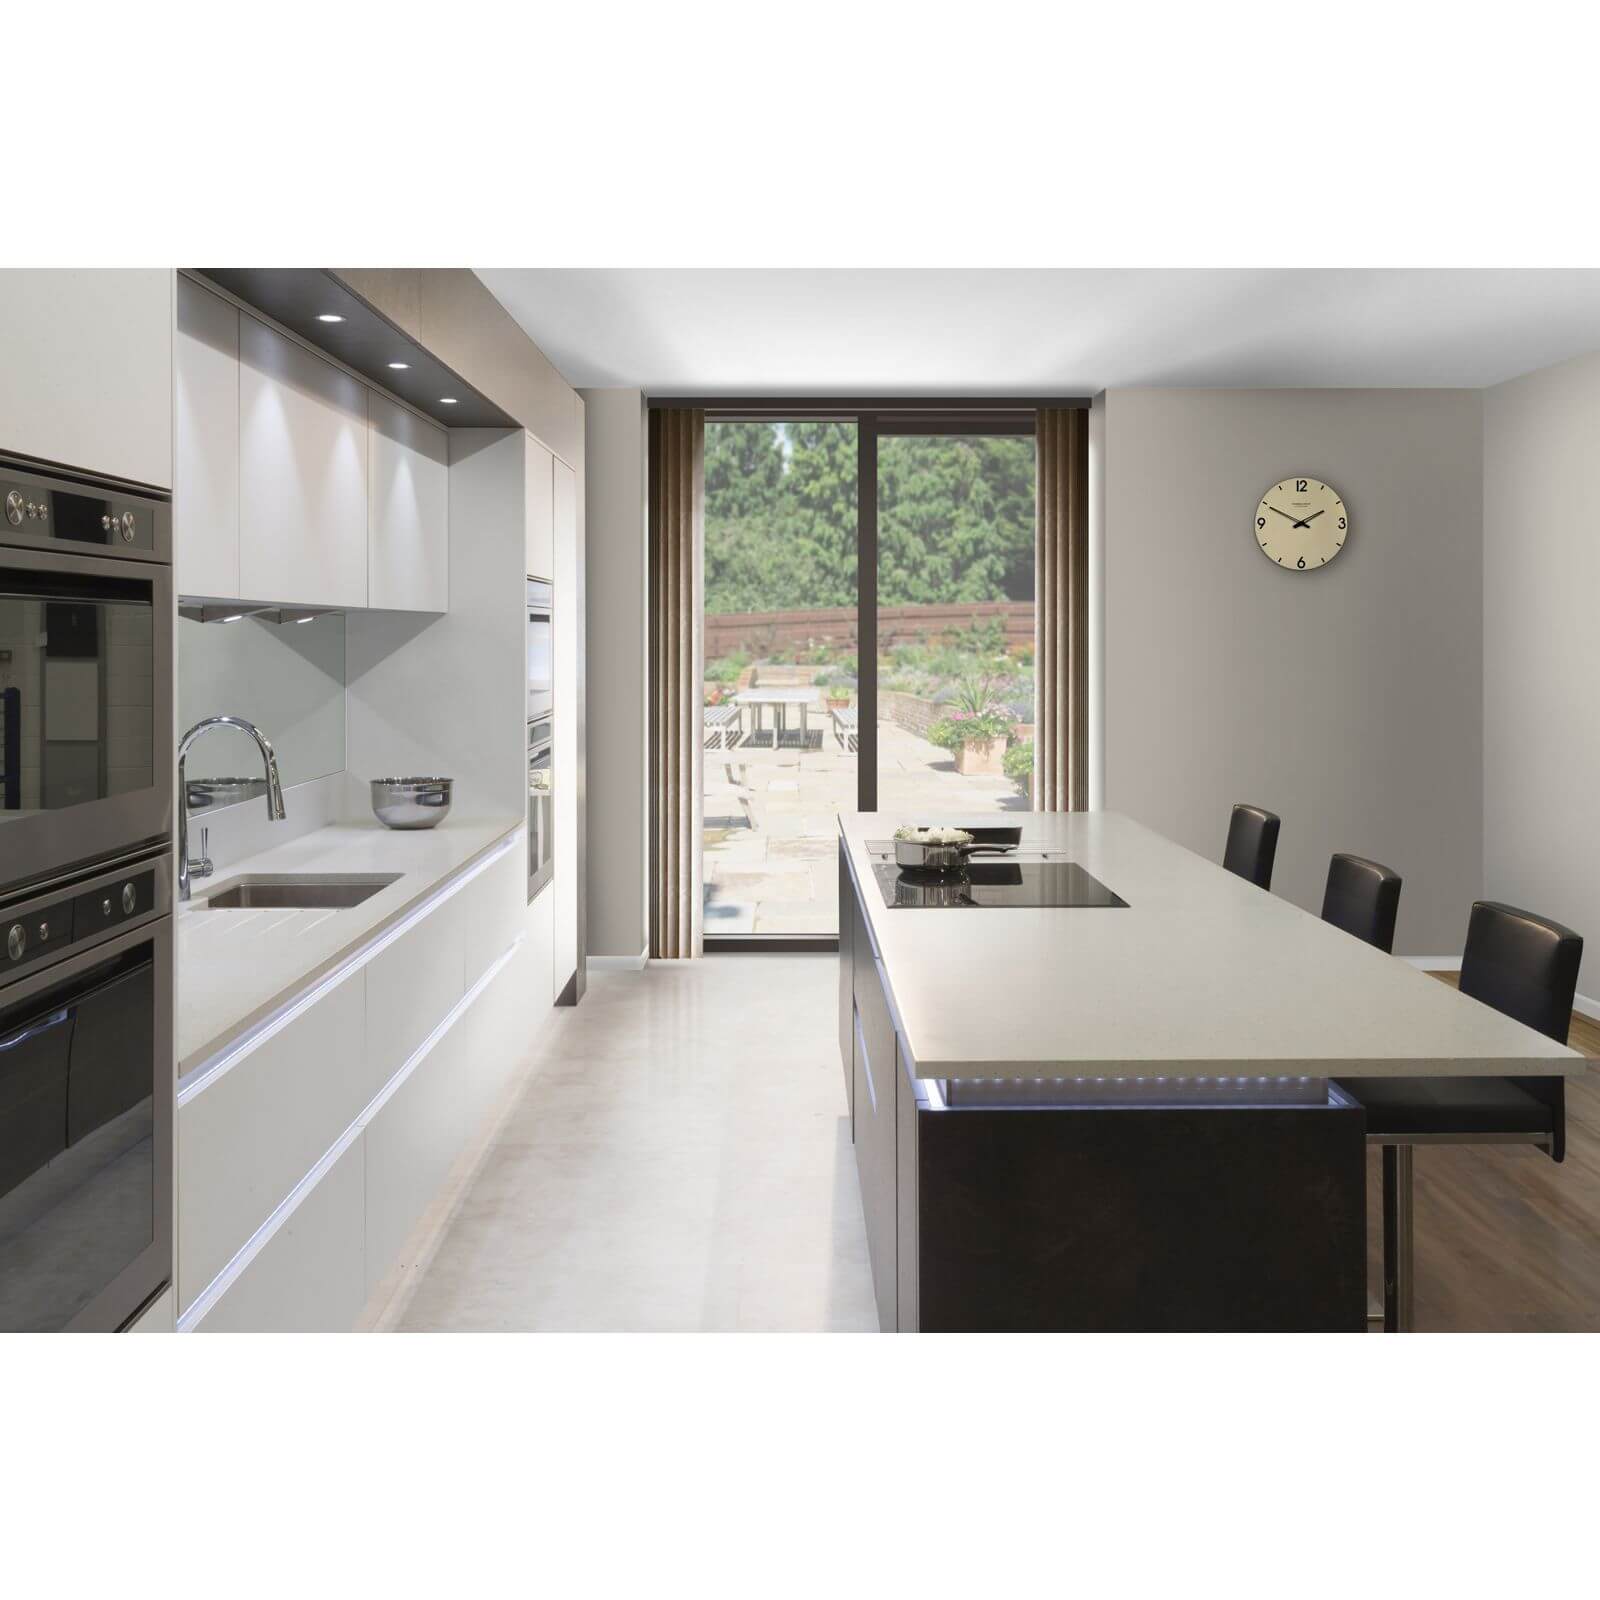 Minerva Grey Crystal Kitchen Worktop - 150 x 65 x 2.5cm